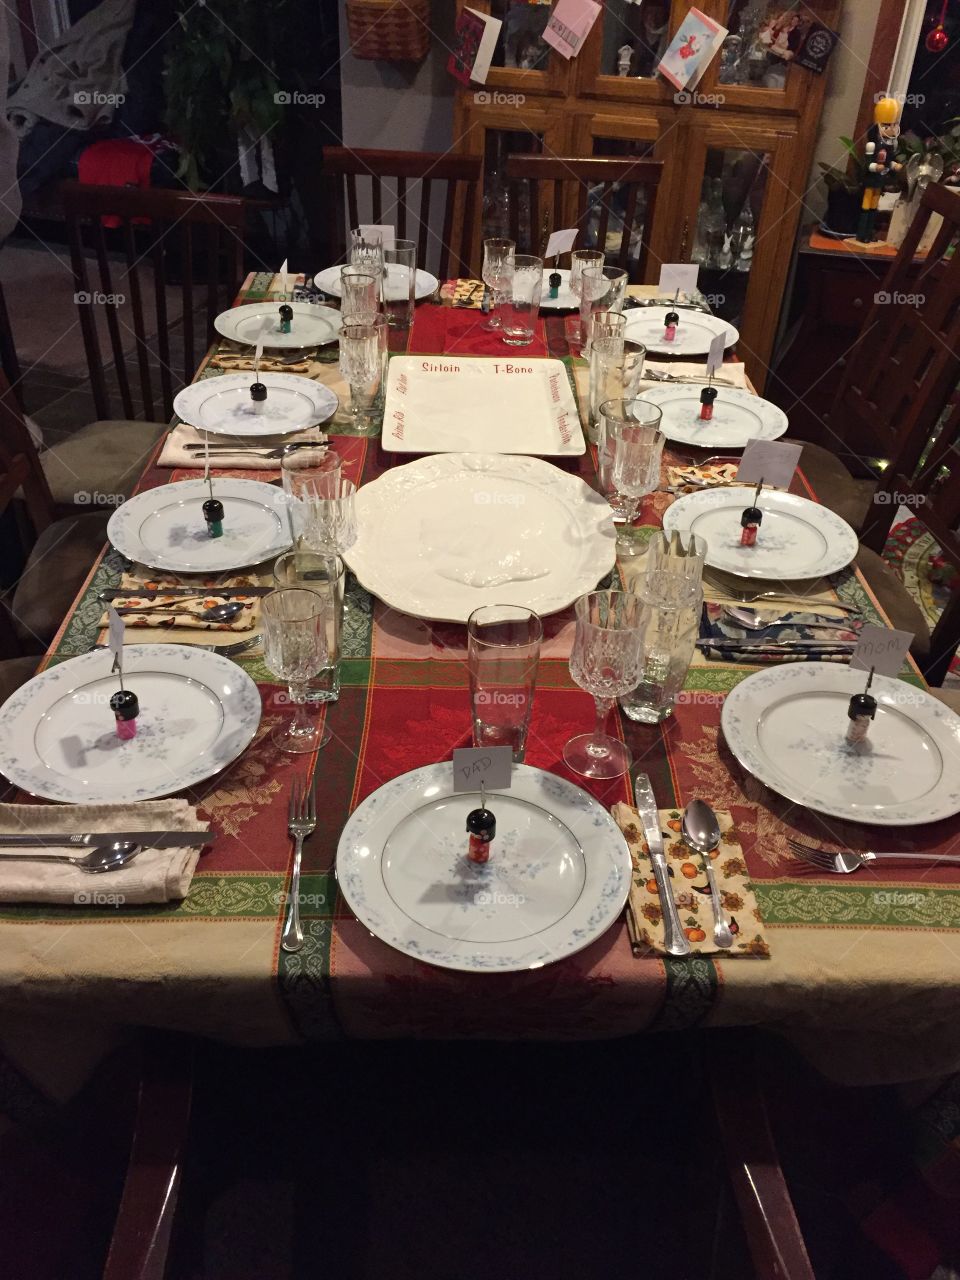 Mothers Christmas dinner table setup